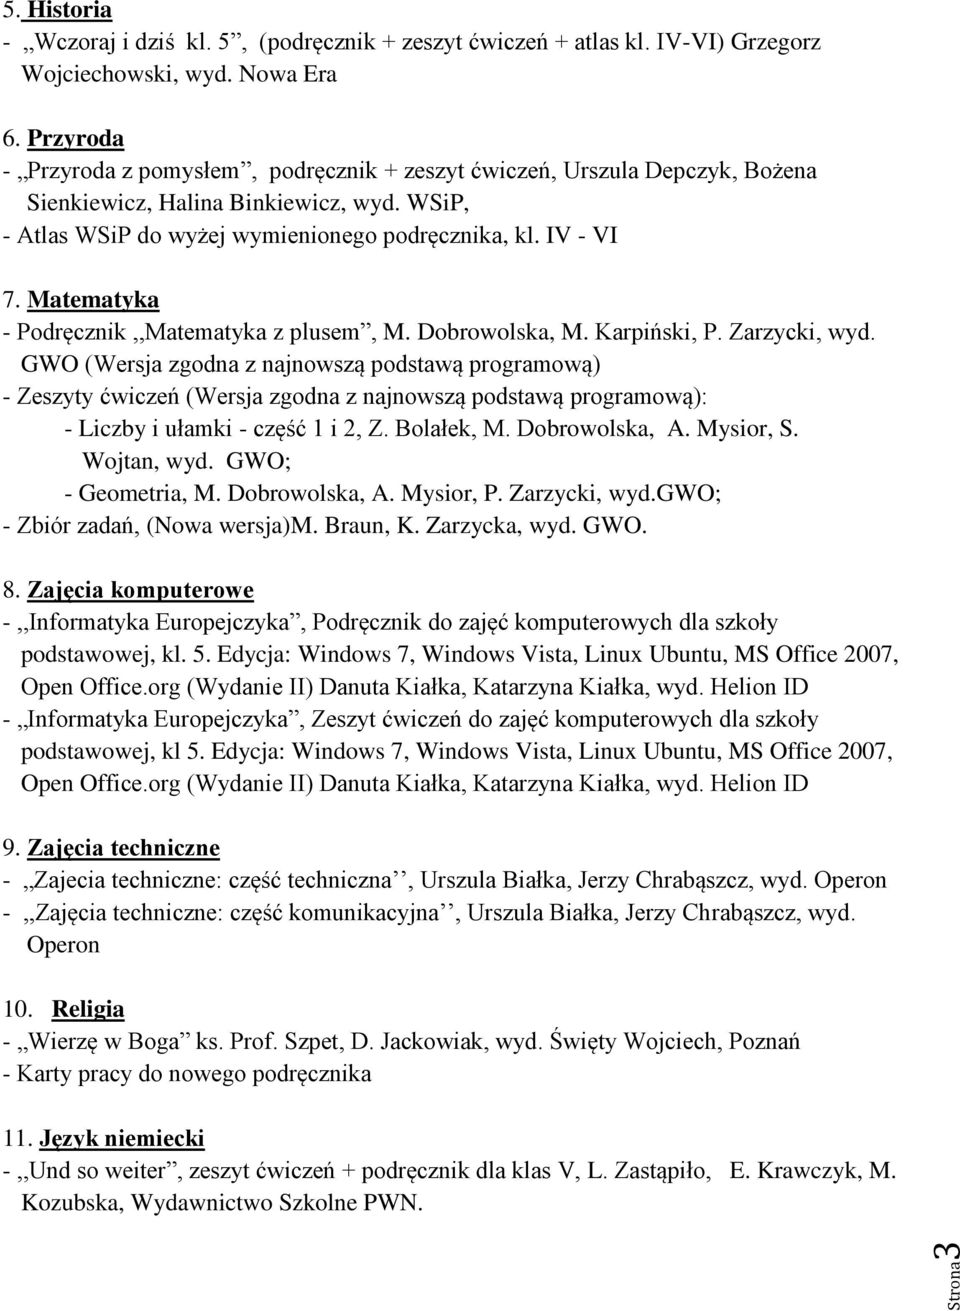 Zarzycki, wyd.gwo; - Zbiór zadań, (Nowa wersja)m. Braun, K. Zarzycka, wyd. GWO. 8. Zajęcia komputerowe podstawowej, kl. 5.